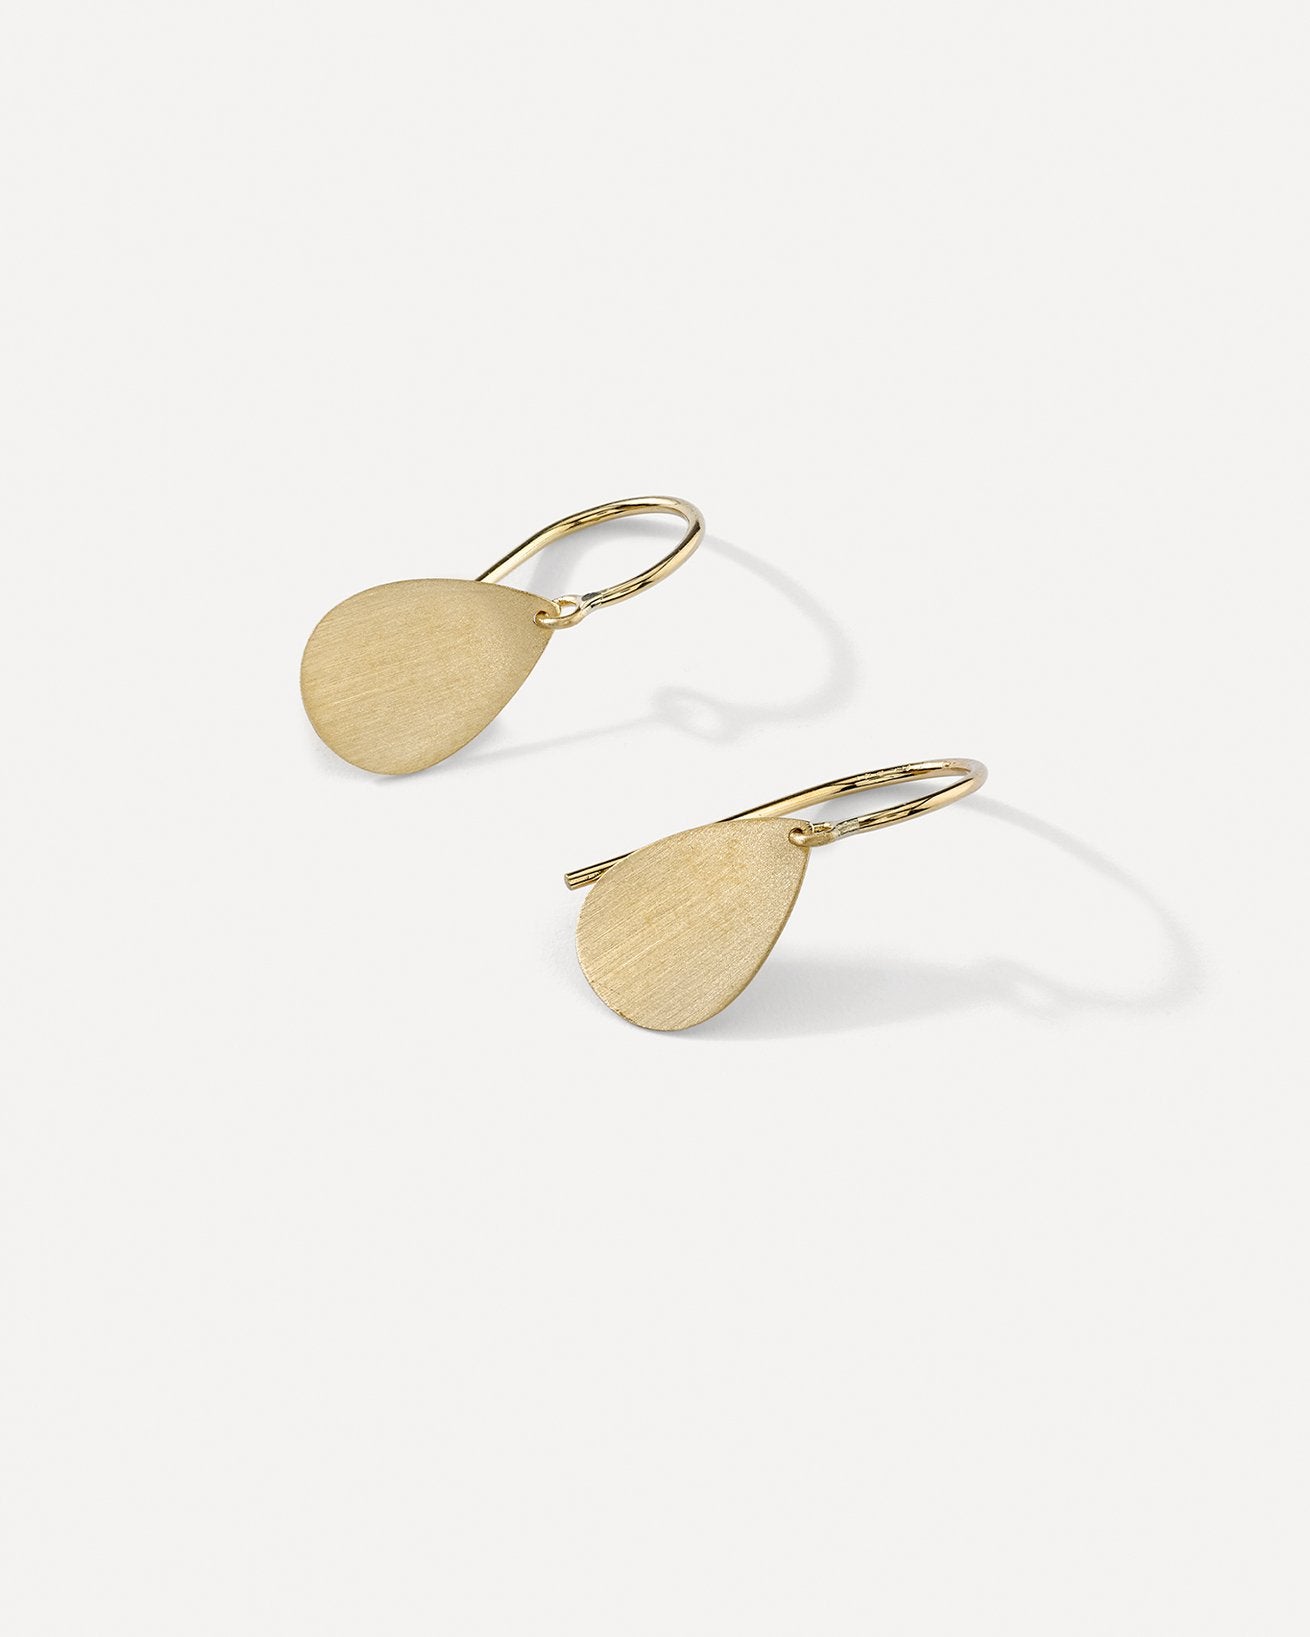 Gold Drop Earrings | Gold drop earrings, Drop earrings, Earrings